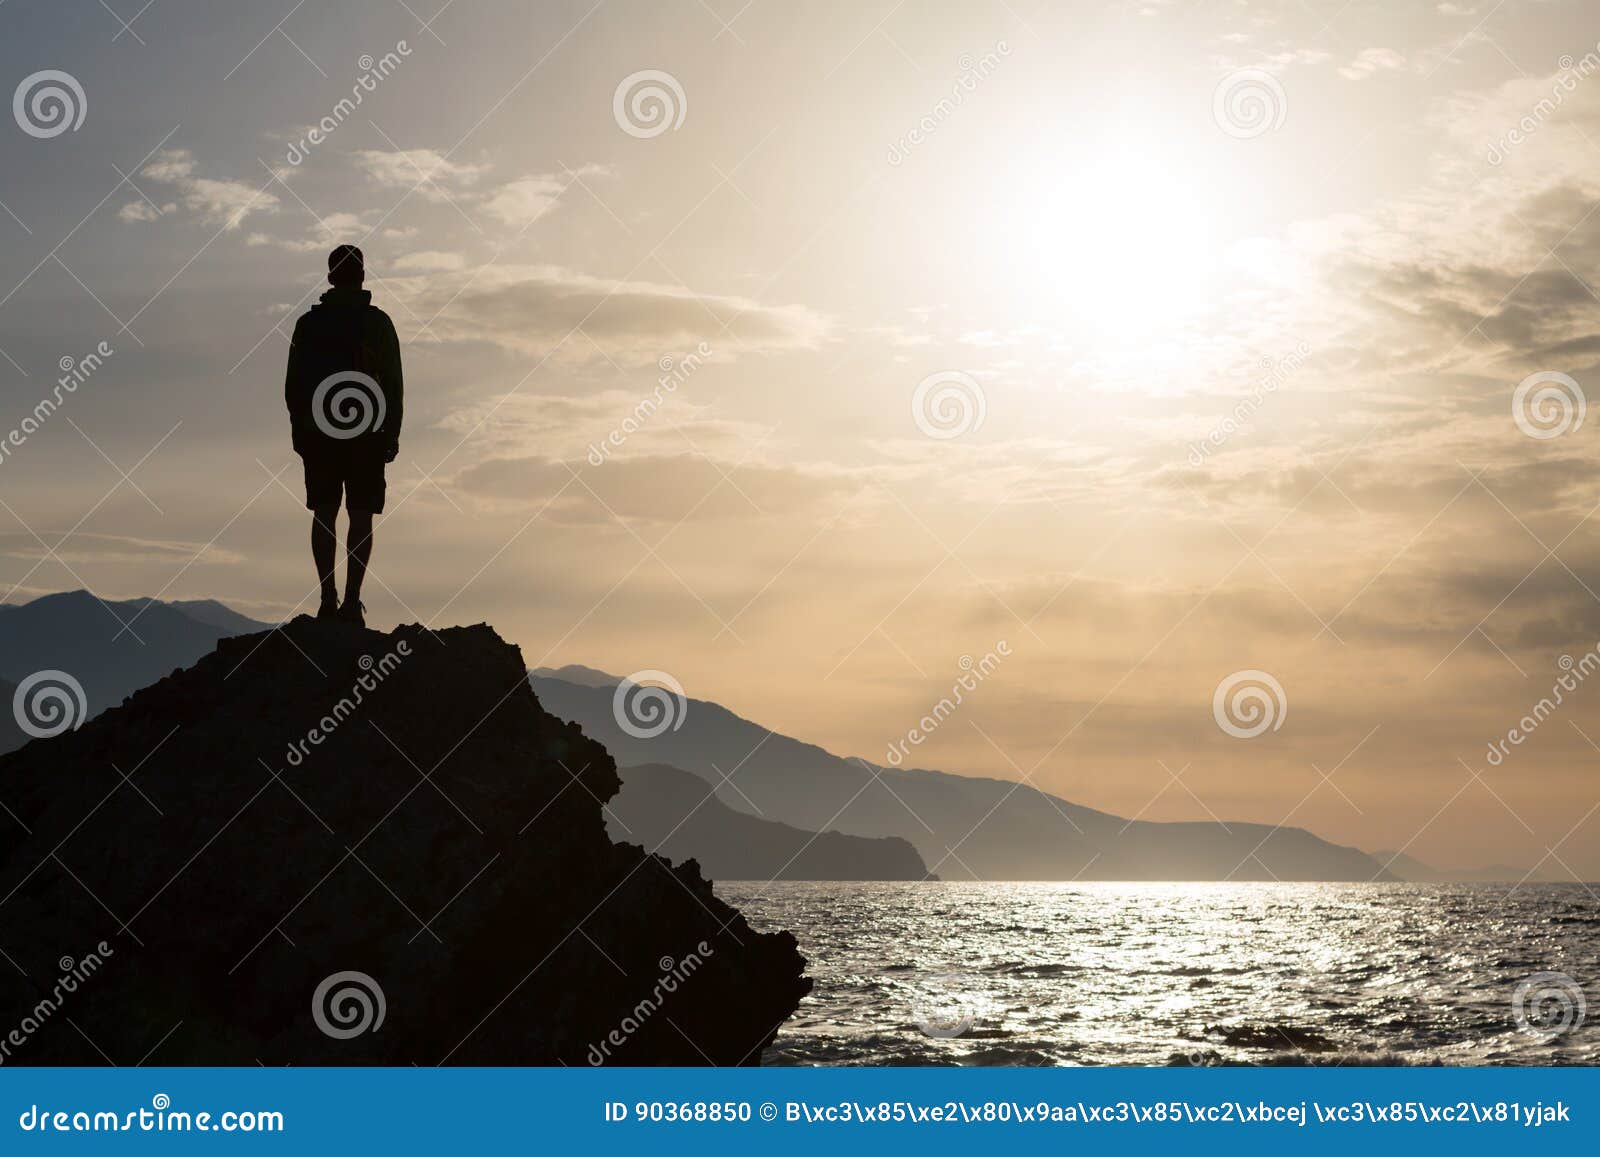 hiking silhouette backpacker, man looking at ocean